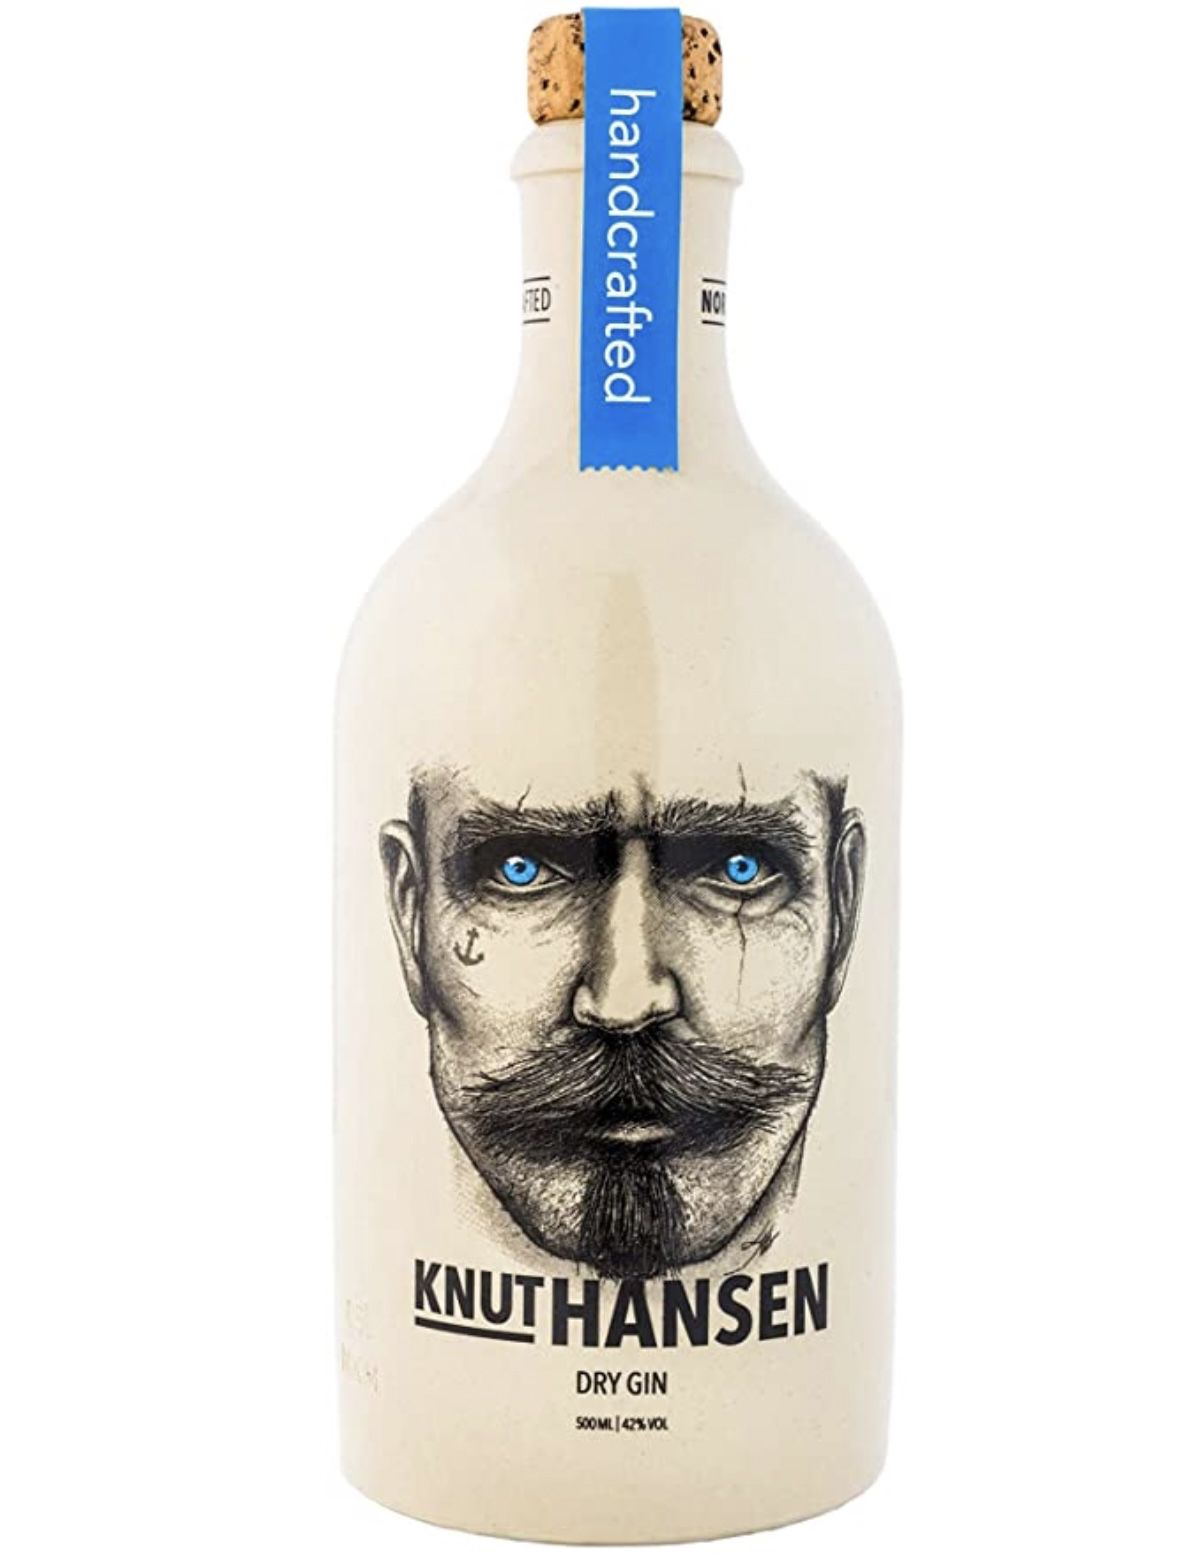 Knut Hansen handcrafted Dry Gin   in 0,5 Liter Keramik Flasche ab 24,90€ (statt 28€)